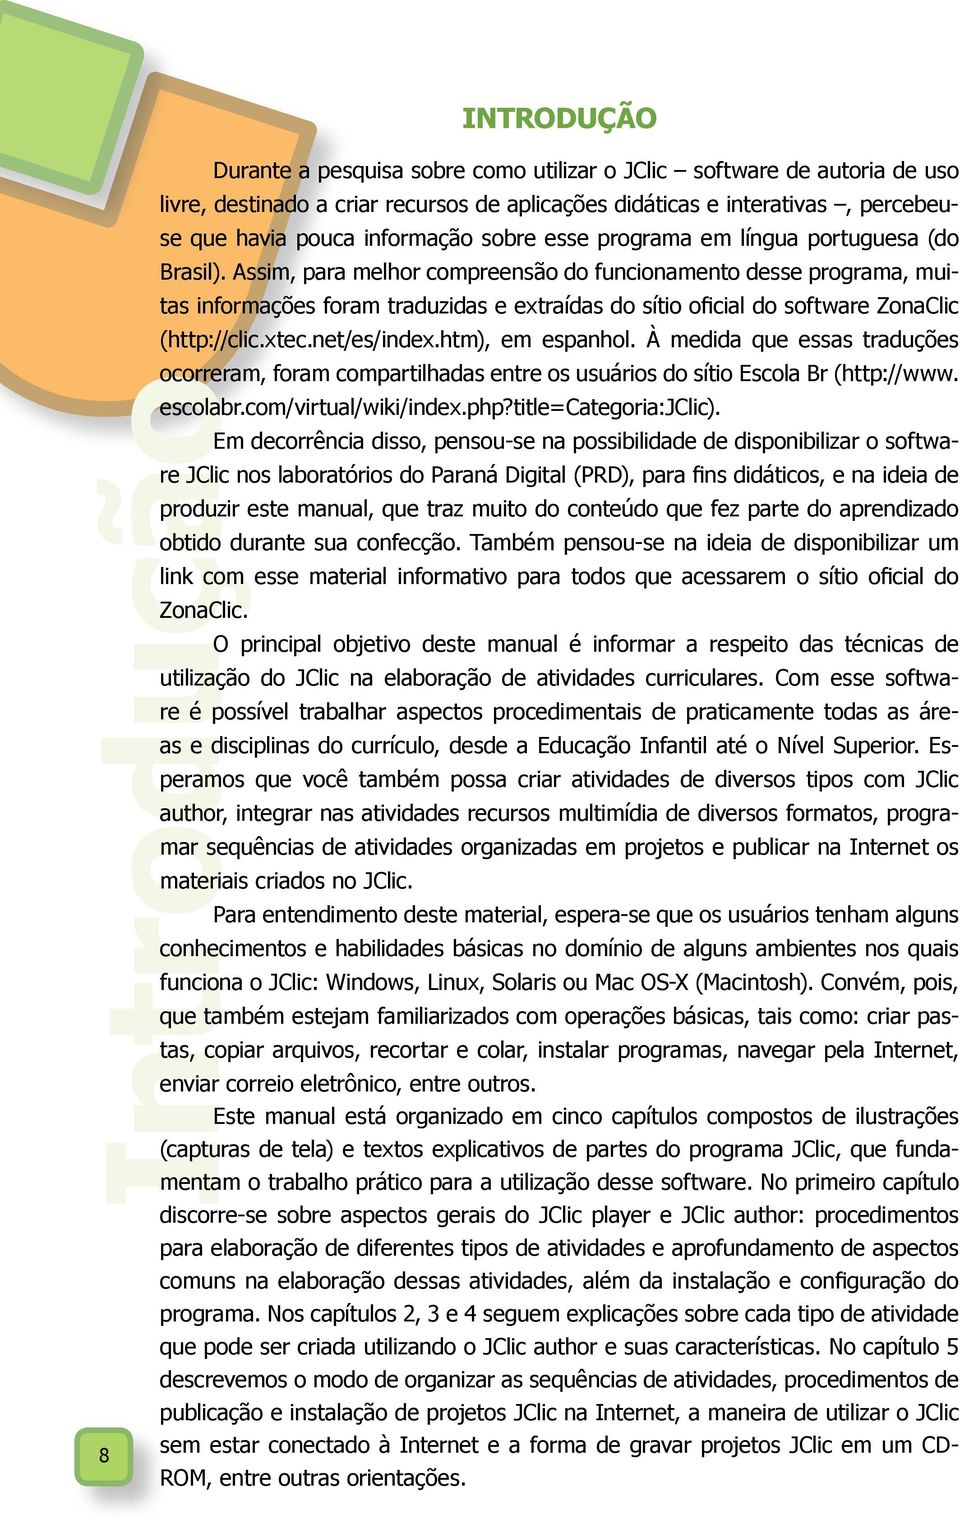 Assim, para melhor compreensão do funcionamento desse programa, muitas informações foram traduzidas e extraídas do sítio oficial do software ZonaClic (http://clic.xtec.net/es/index.htm), em espanhol.